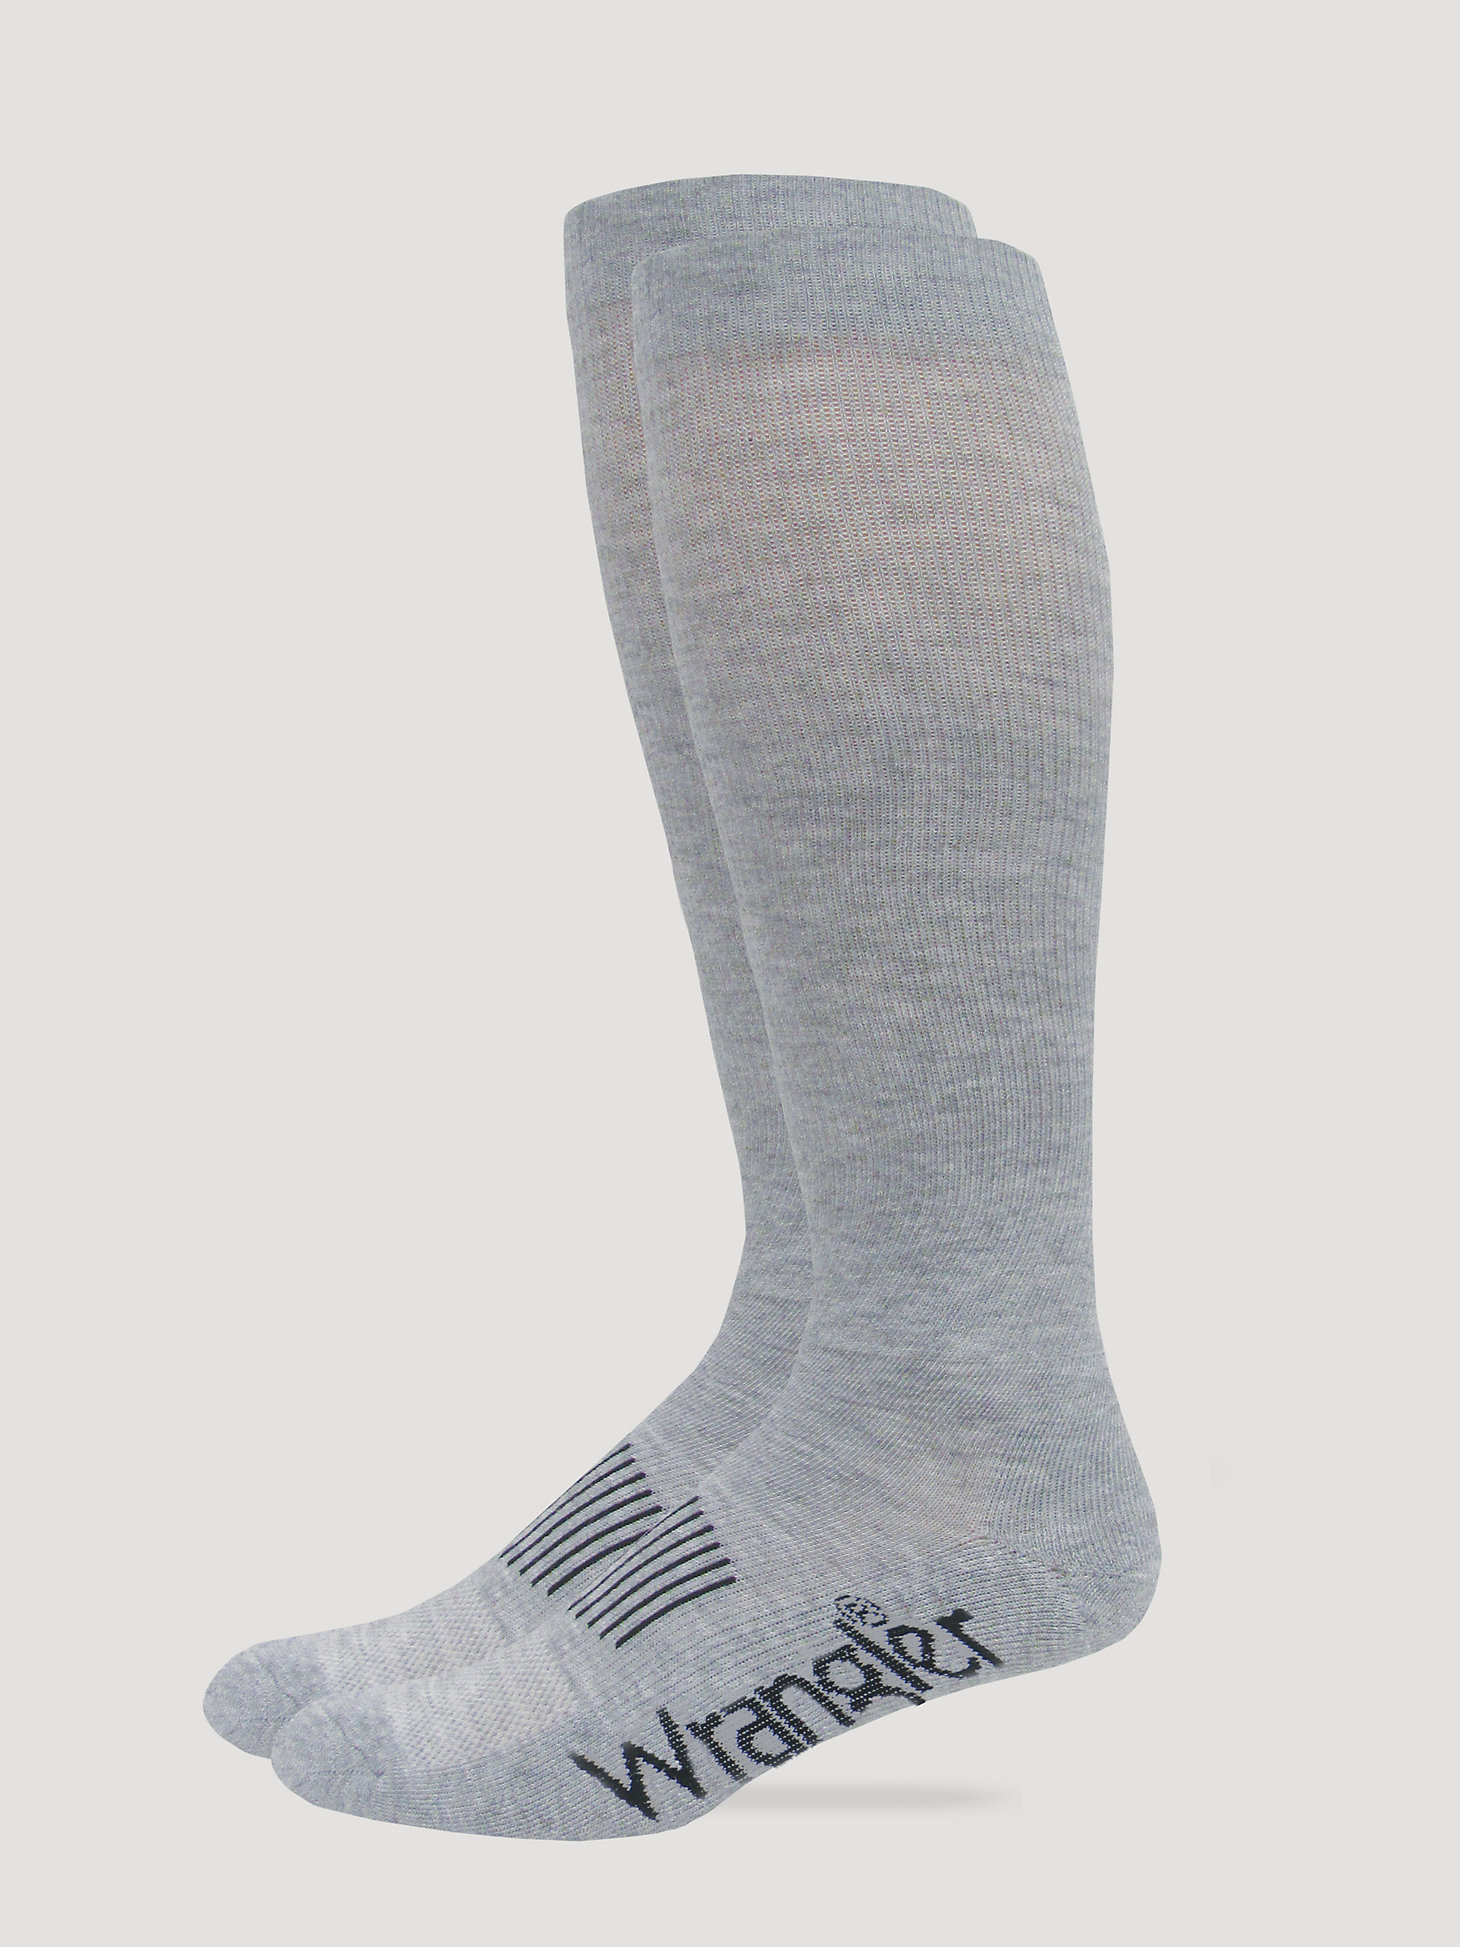 Men's Classic Boot Sock in Grey main view